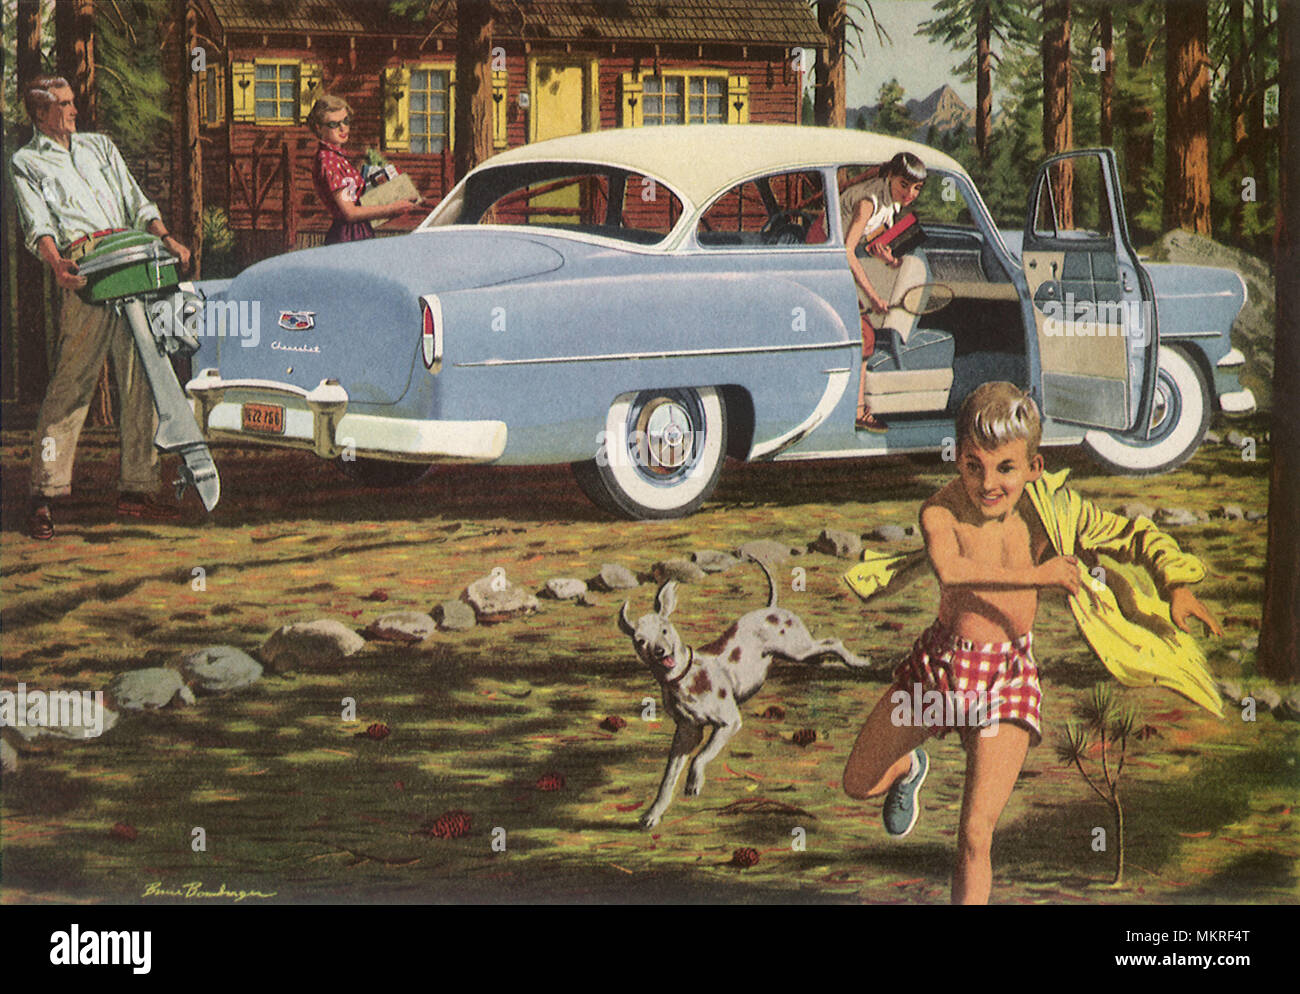 1954 Chevrolet Delray Coupe Stock Photo